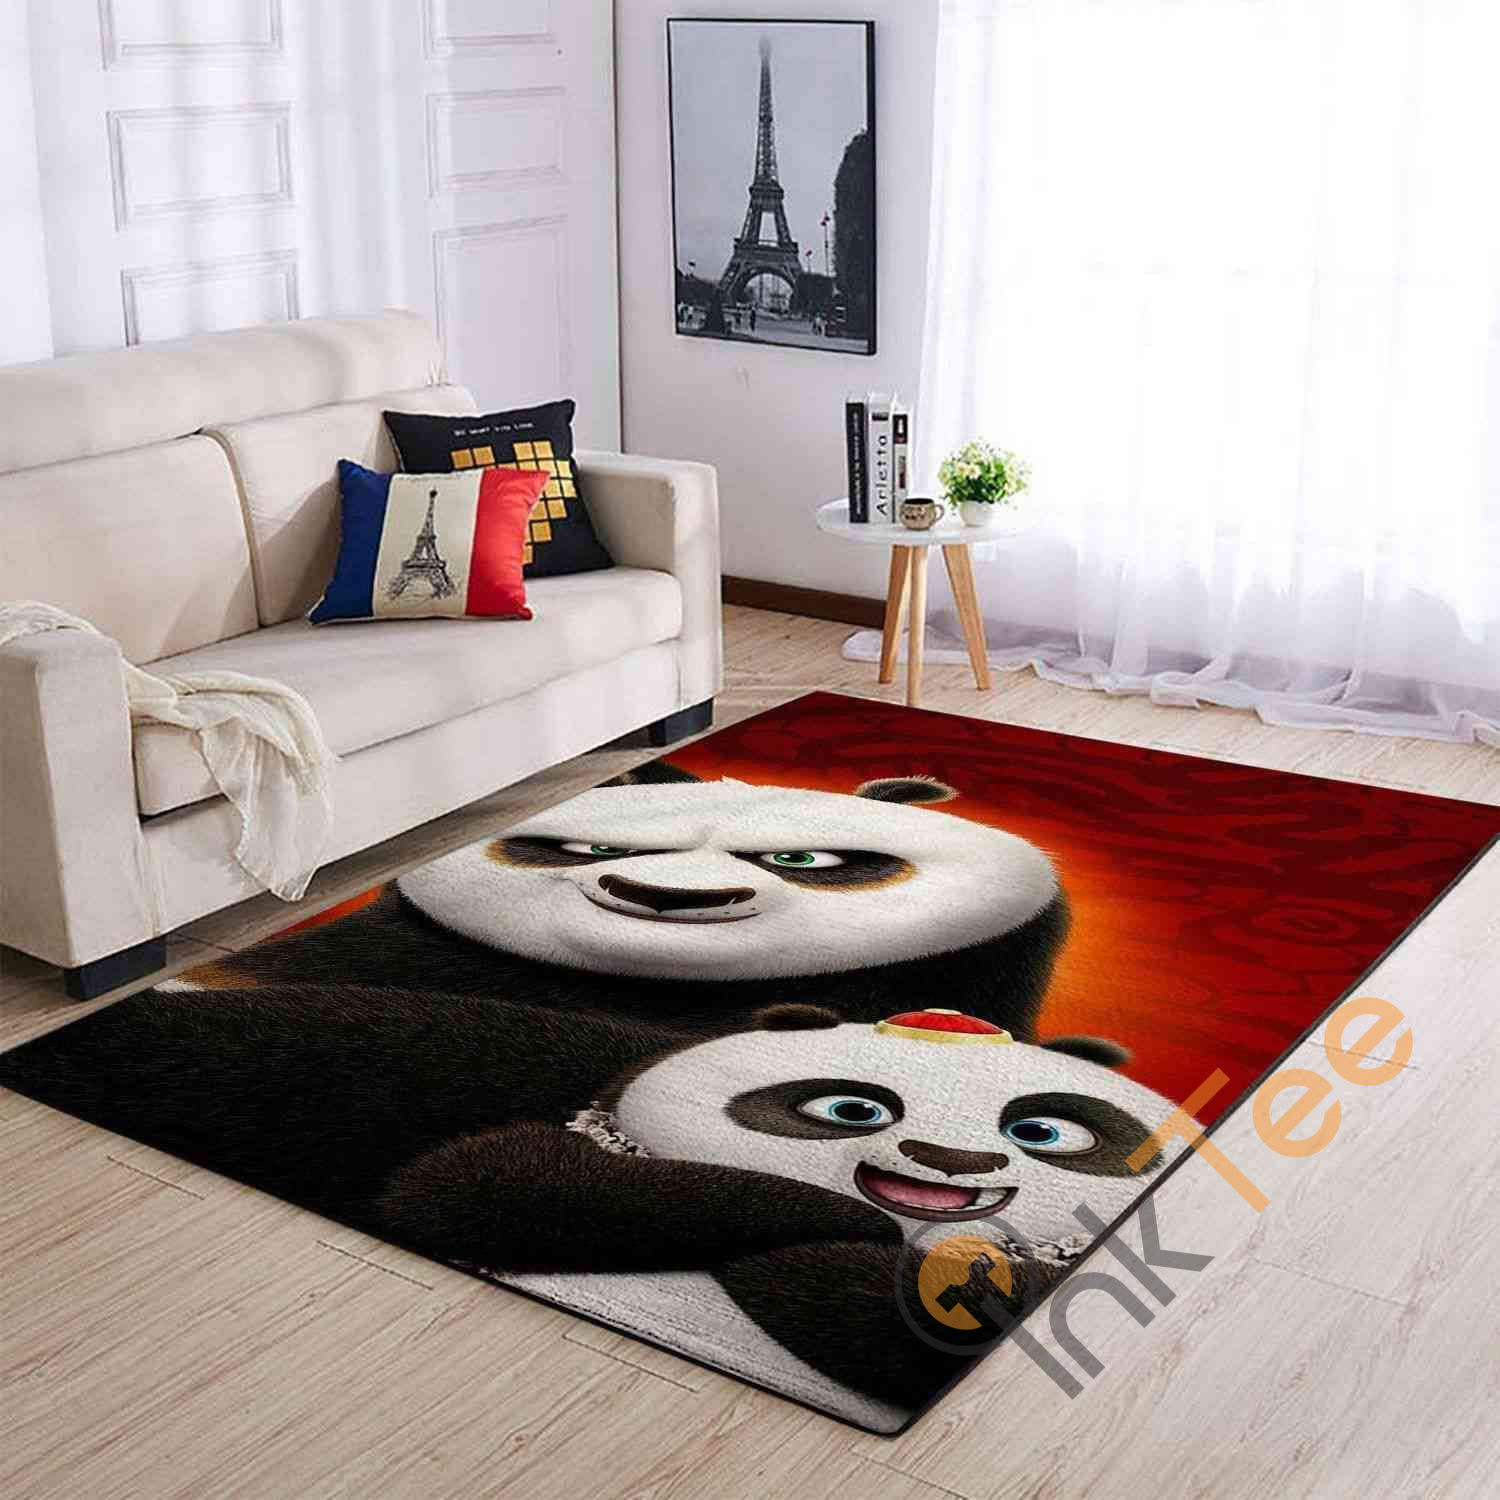 Kungfu Panda Area Rug